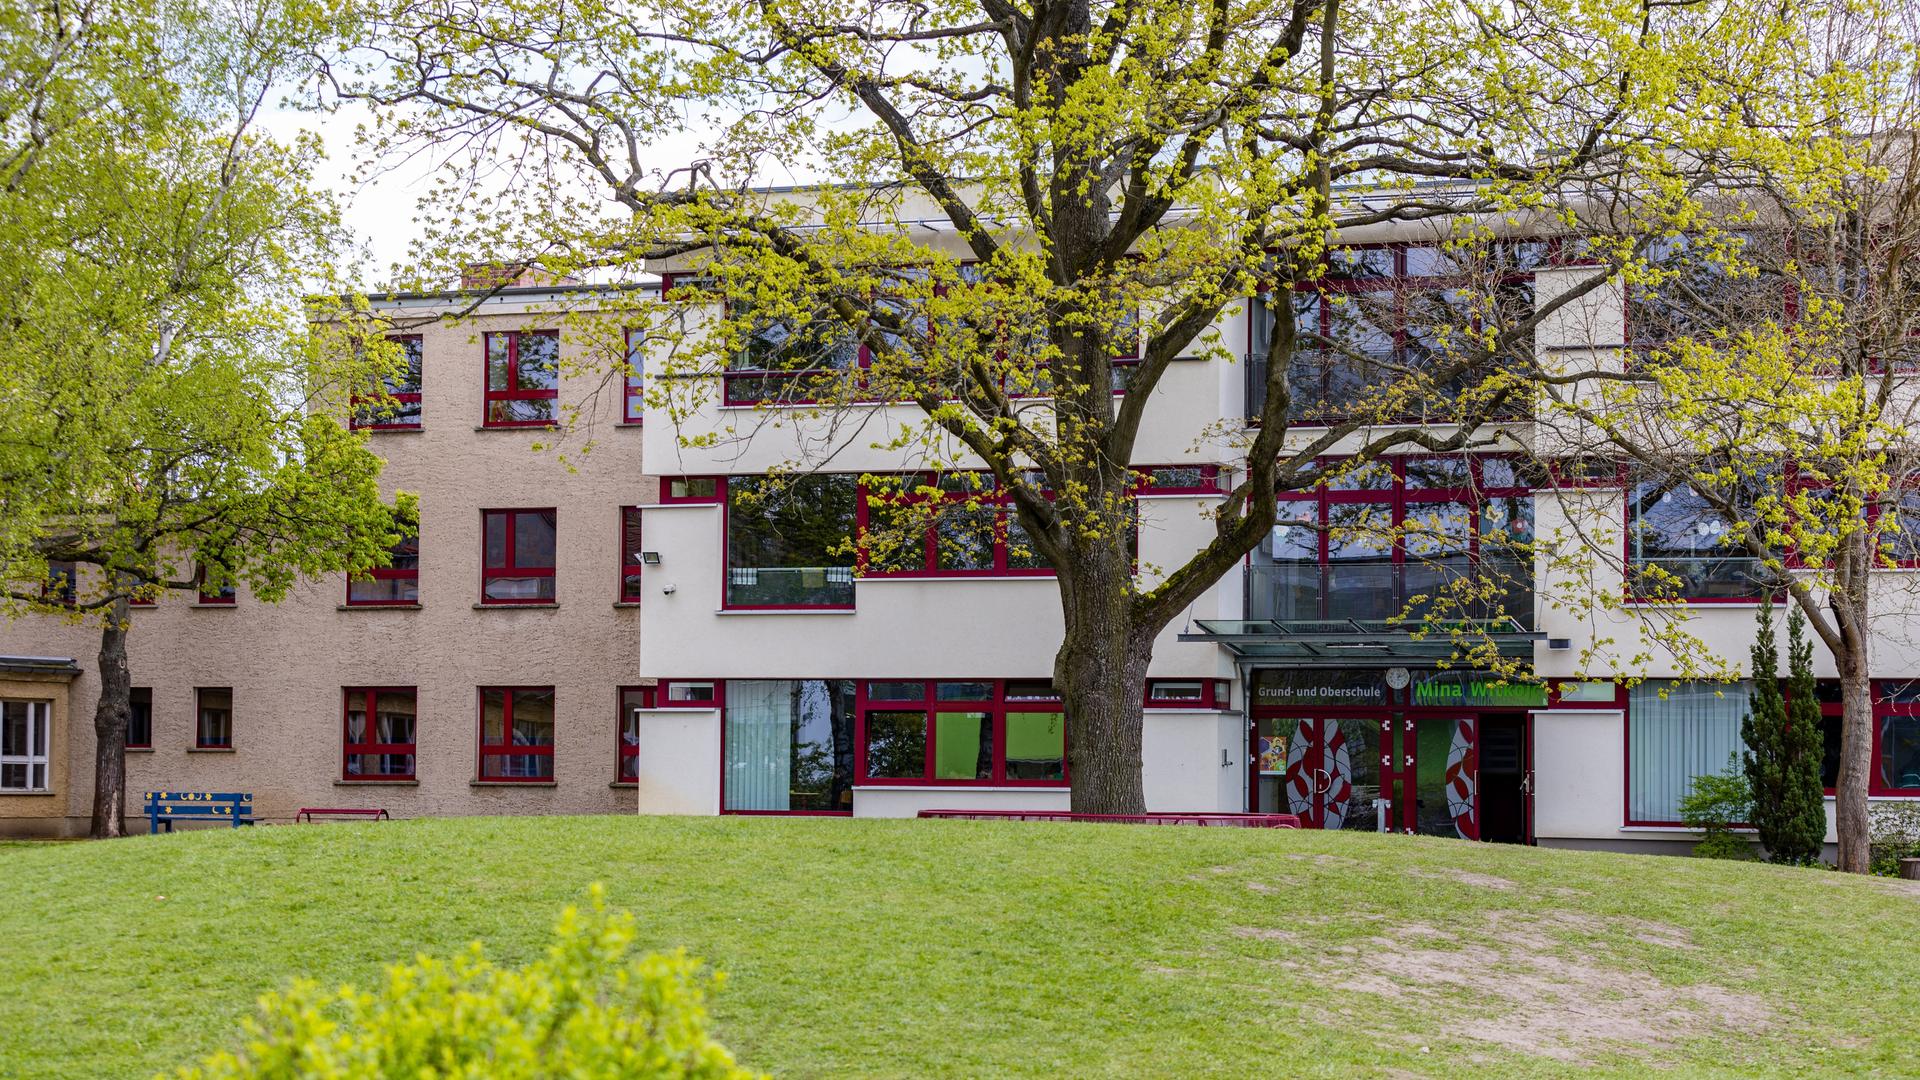 Außenansicht der Grund- und Oberschule in Burg in Brandenburg